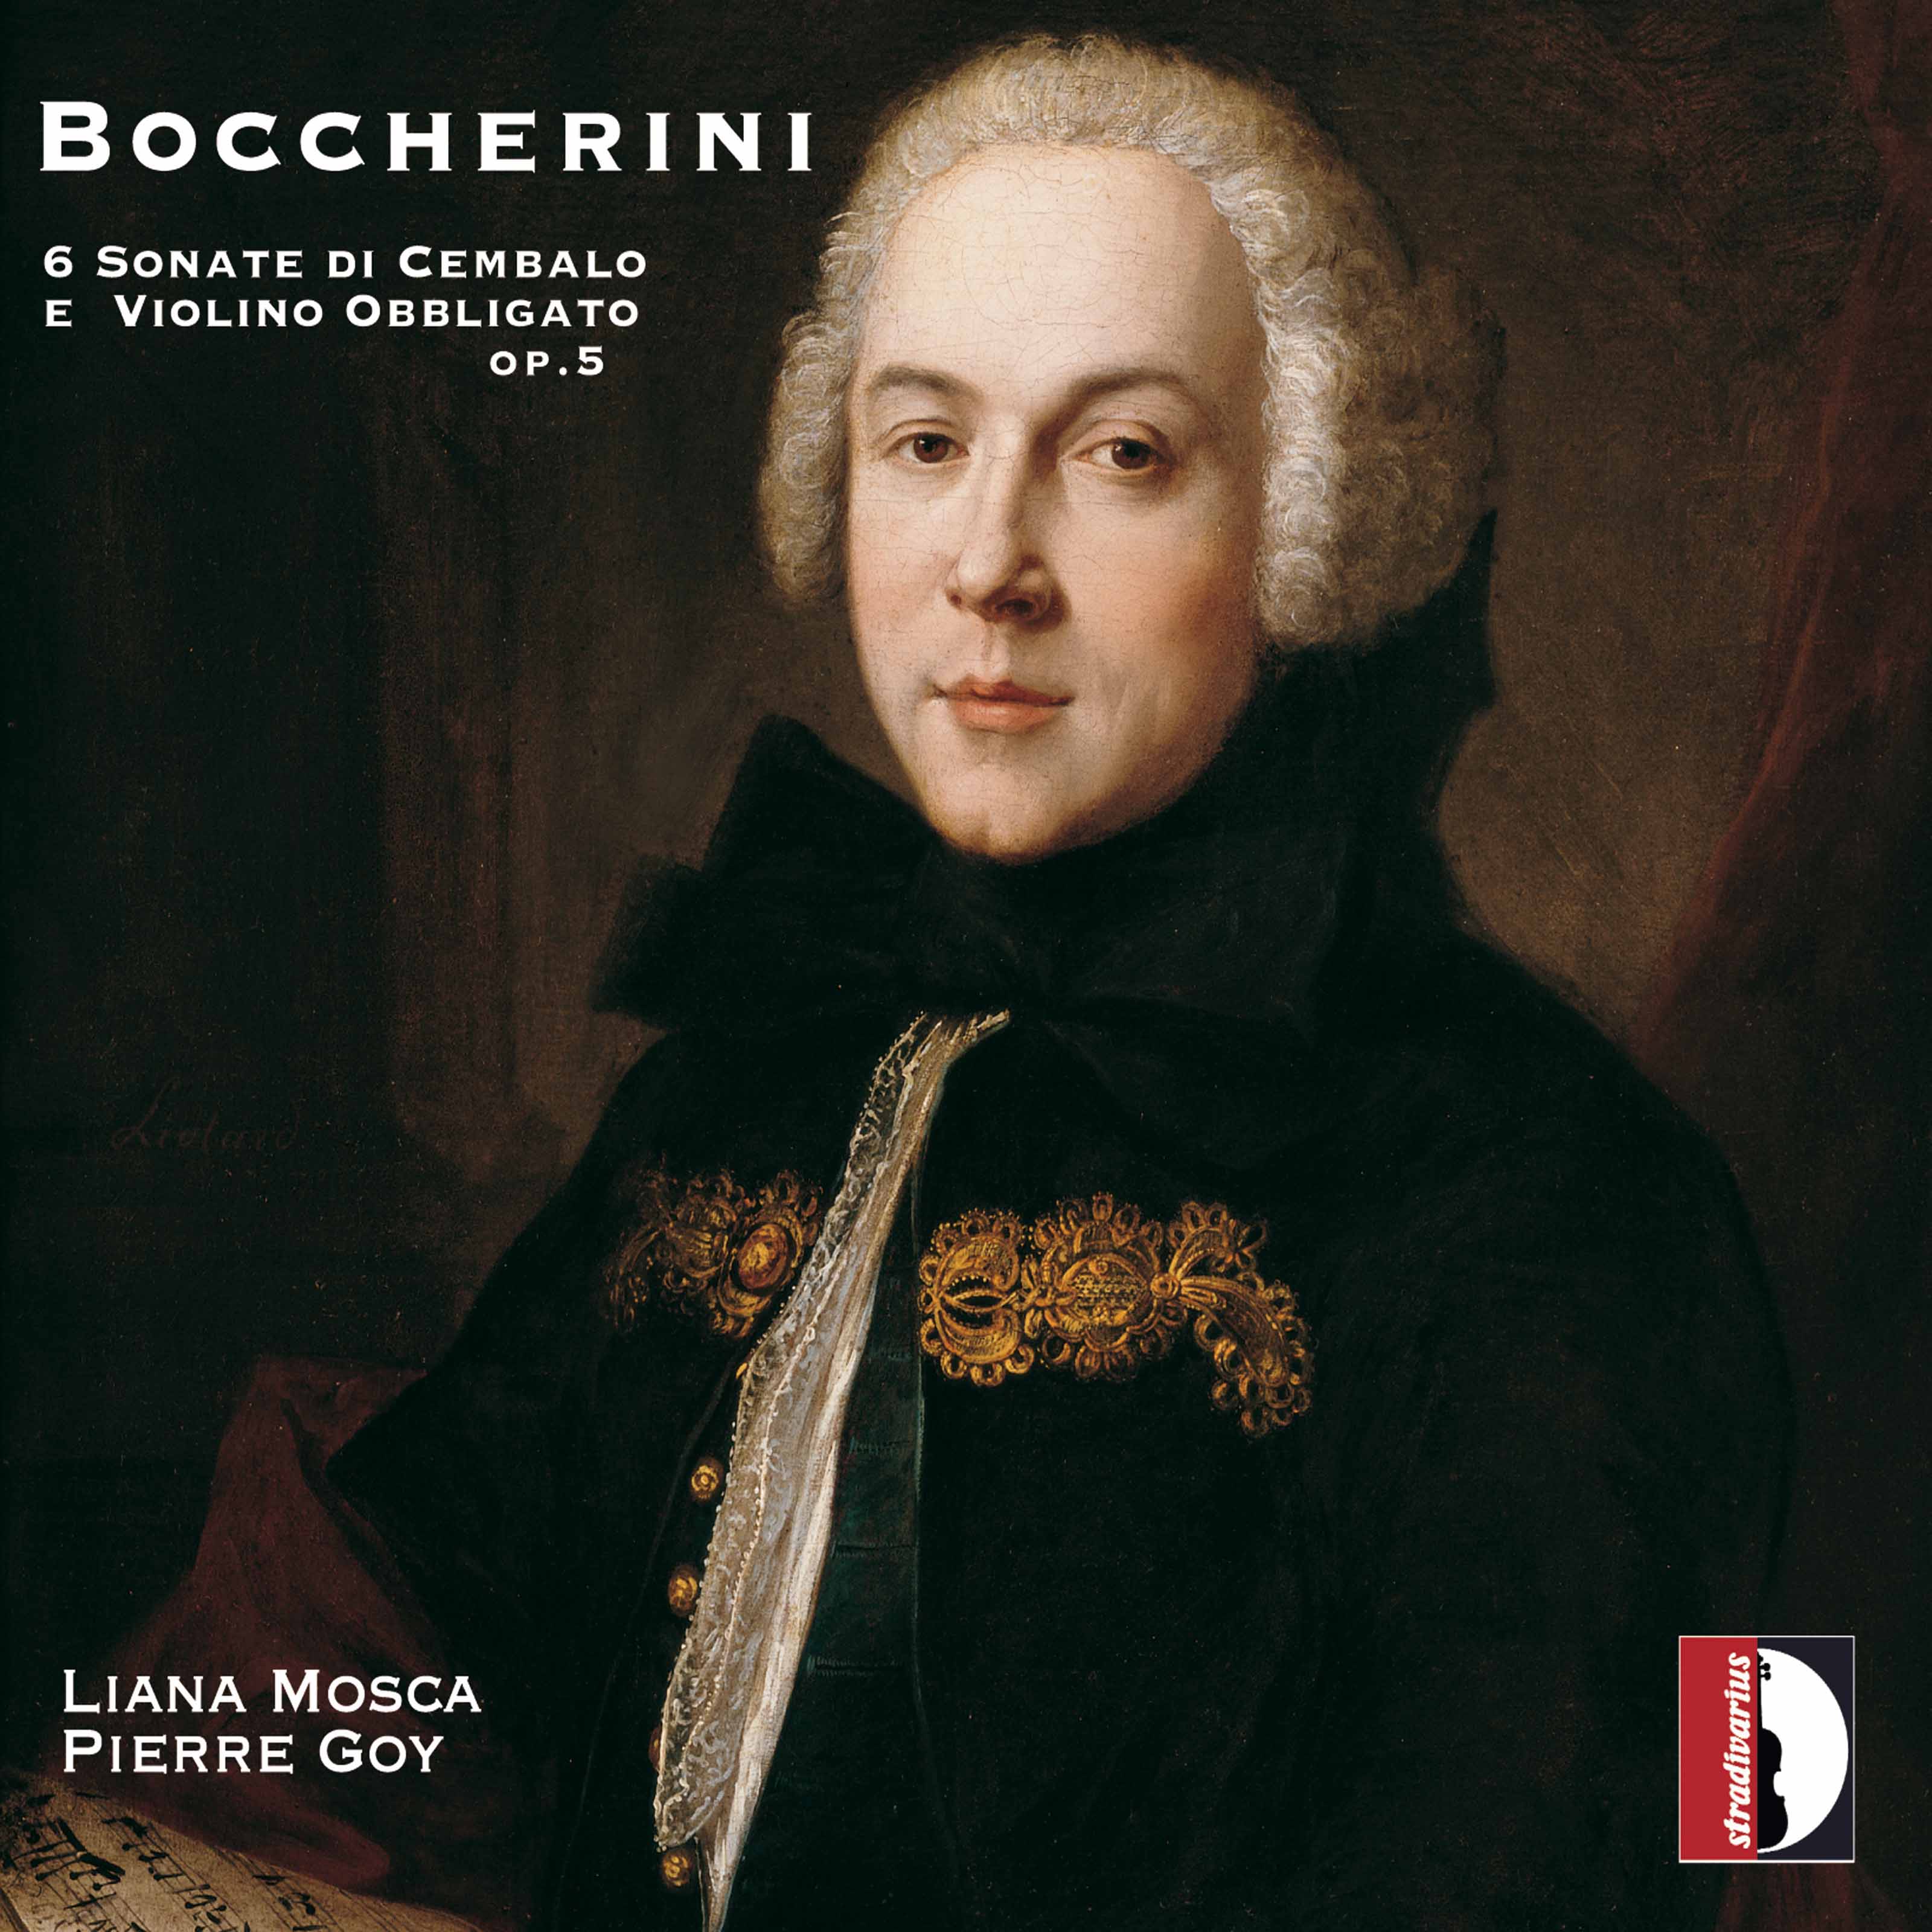 Liana Mosca, Pierre Goy - Boccherini: 6 sonate di cembalo e violino obbligato, Op. 5 (2017) [FLAC 24bit/44,1kHz]